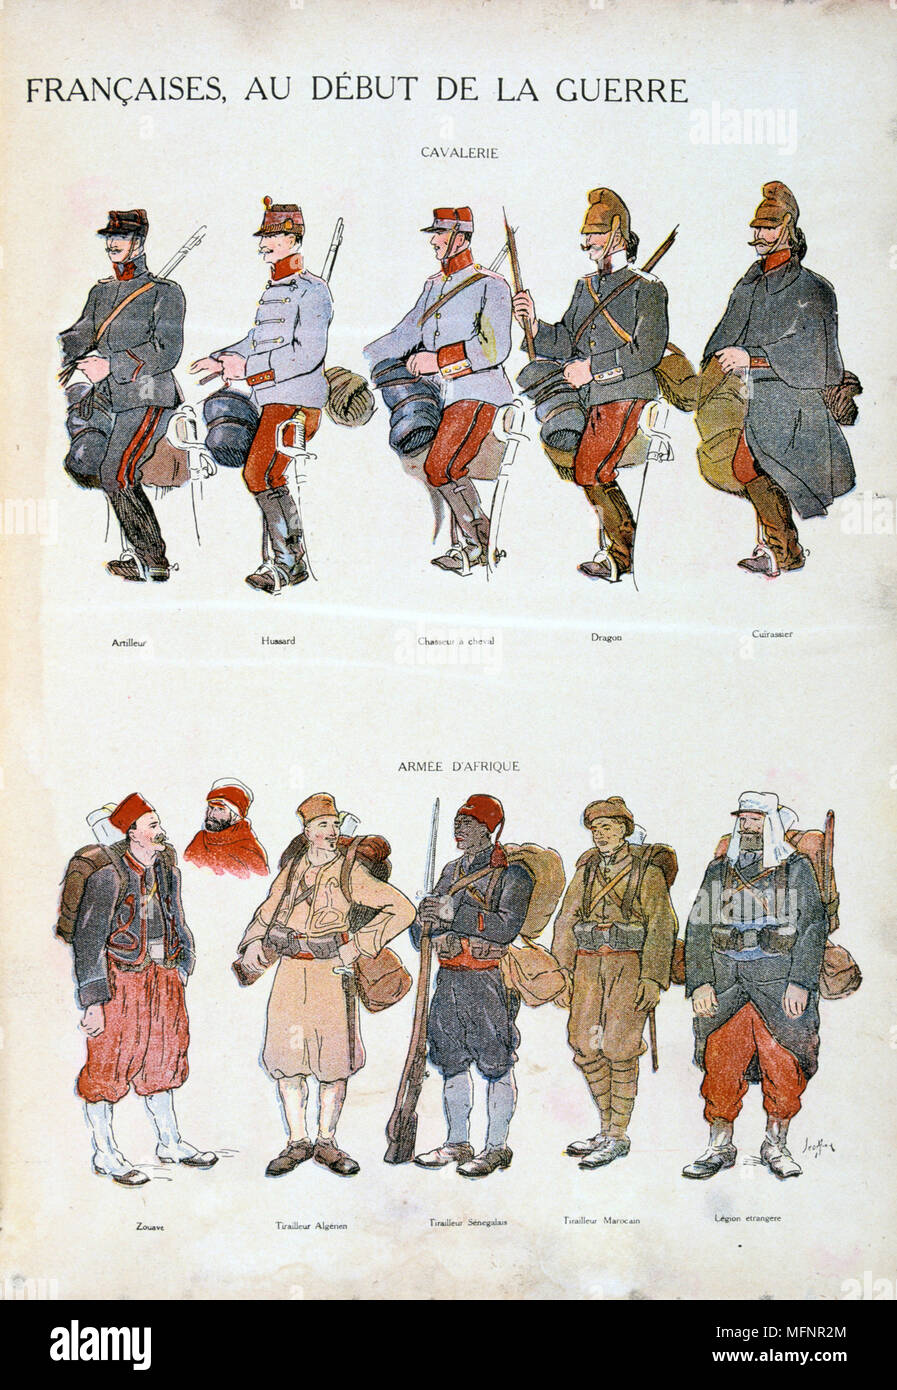 Französischen militärischen Uniformen im Ersten Weltkrieg, 1914-1918. Top: die Kavallerie. Unten: Afrikanische Kräfte. Farbig drucken Stockfoto